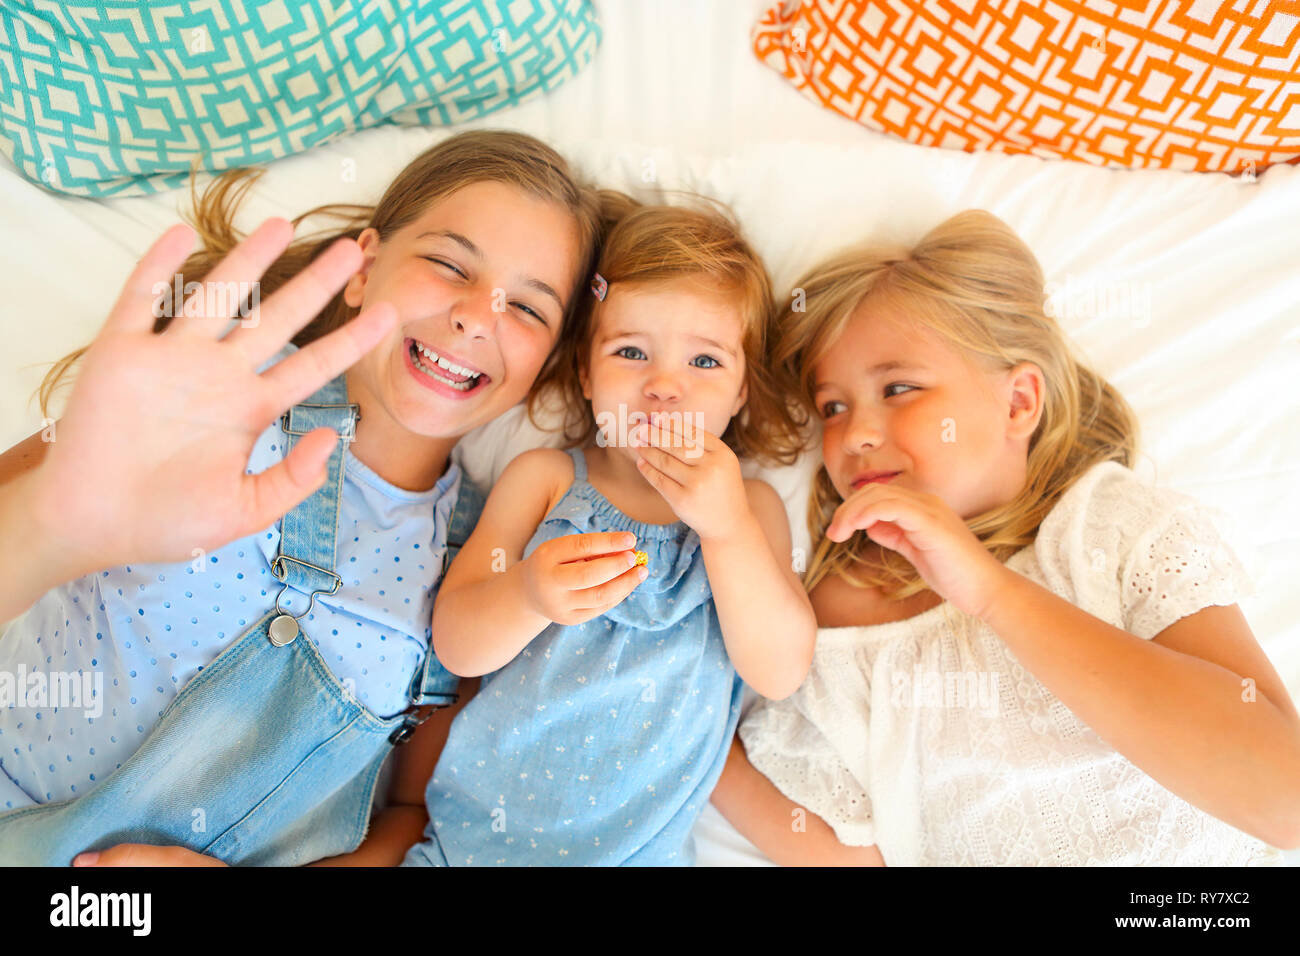 Portrait de l'heureux trois petites sœurs sur un lit s'amusant Banque D'Images